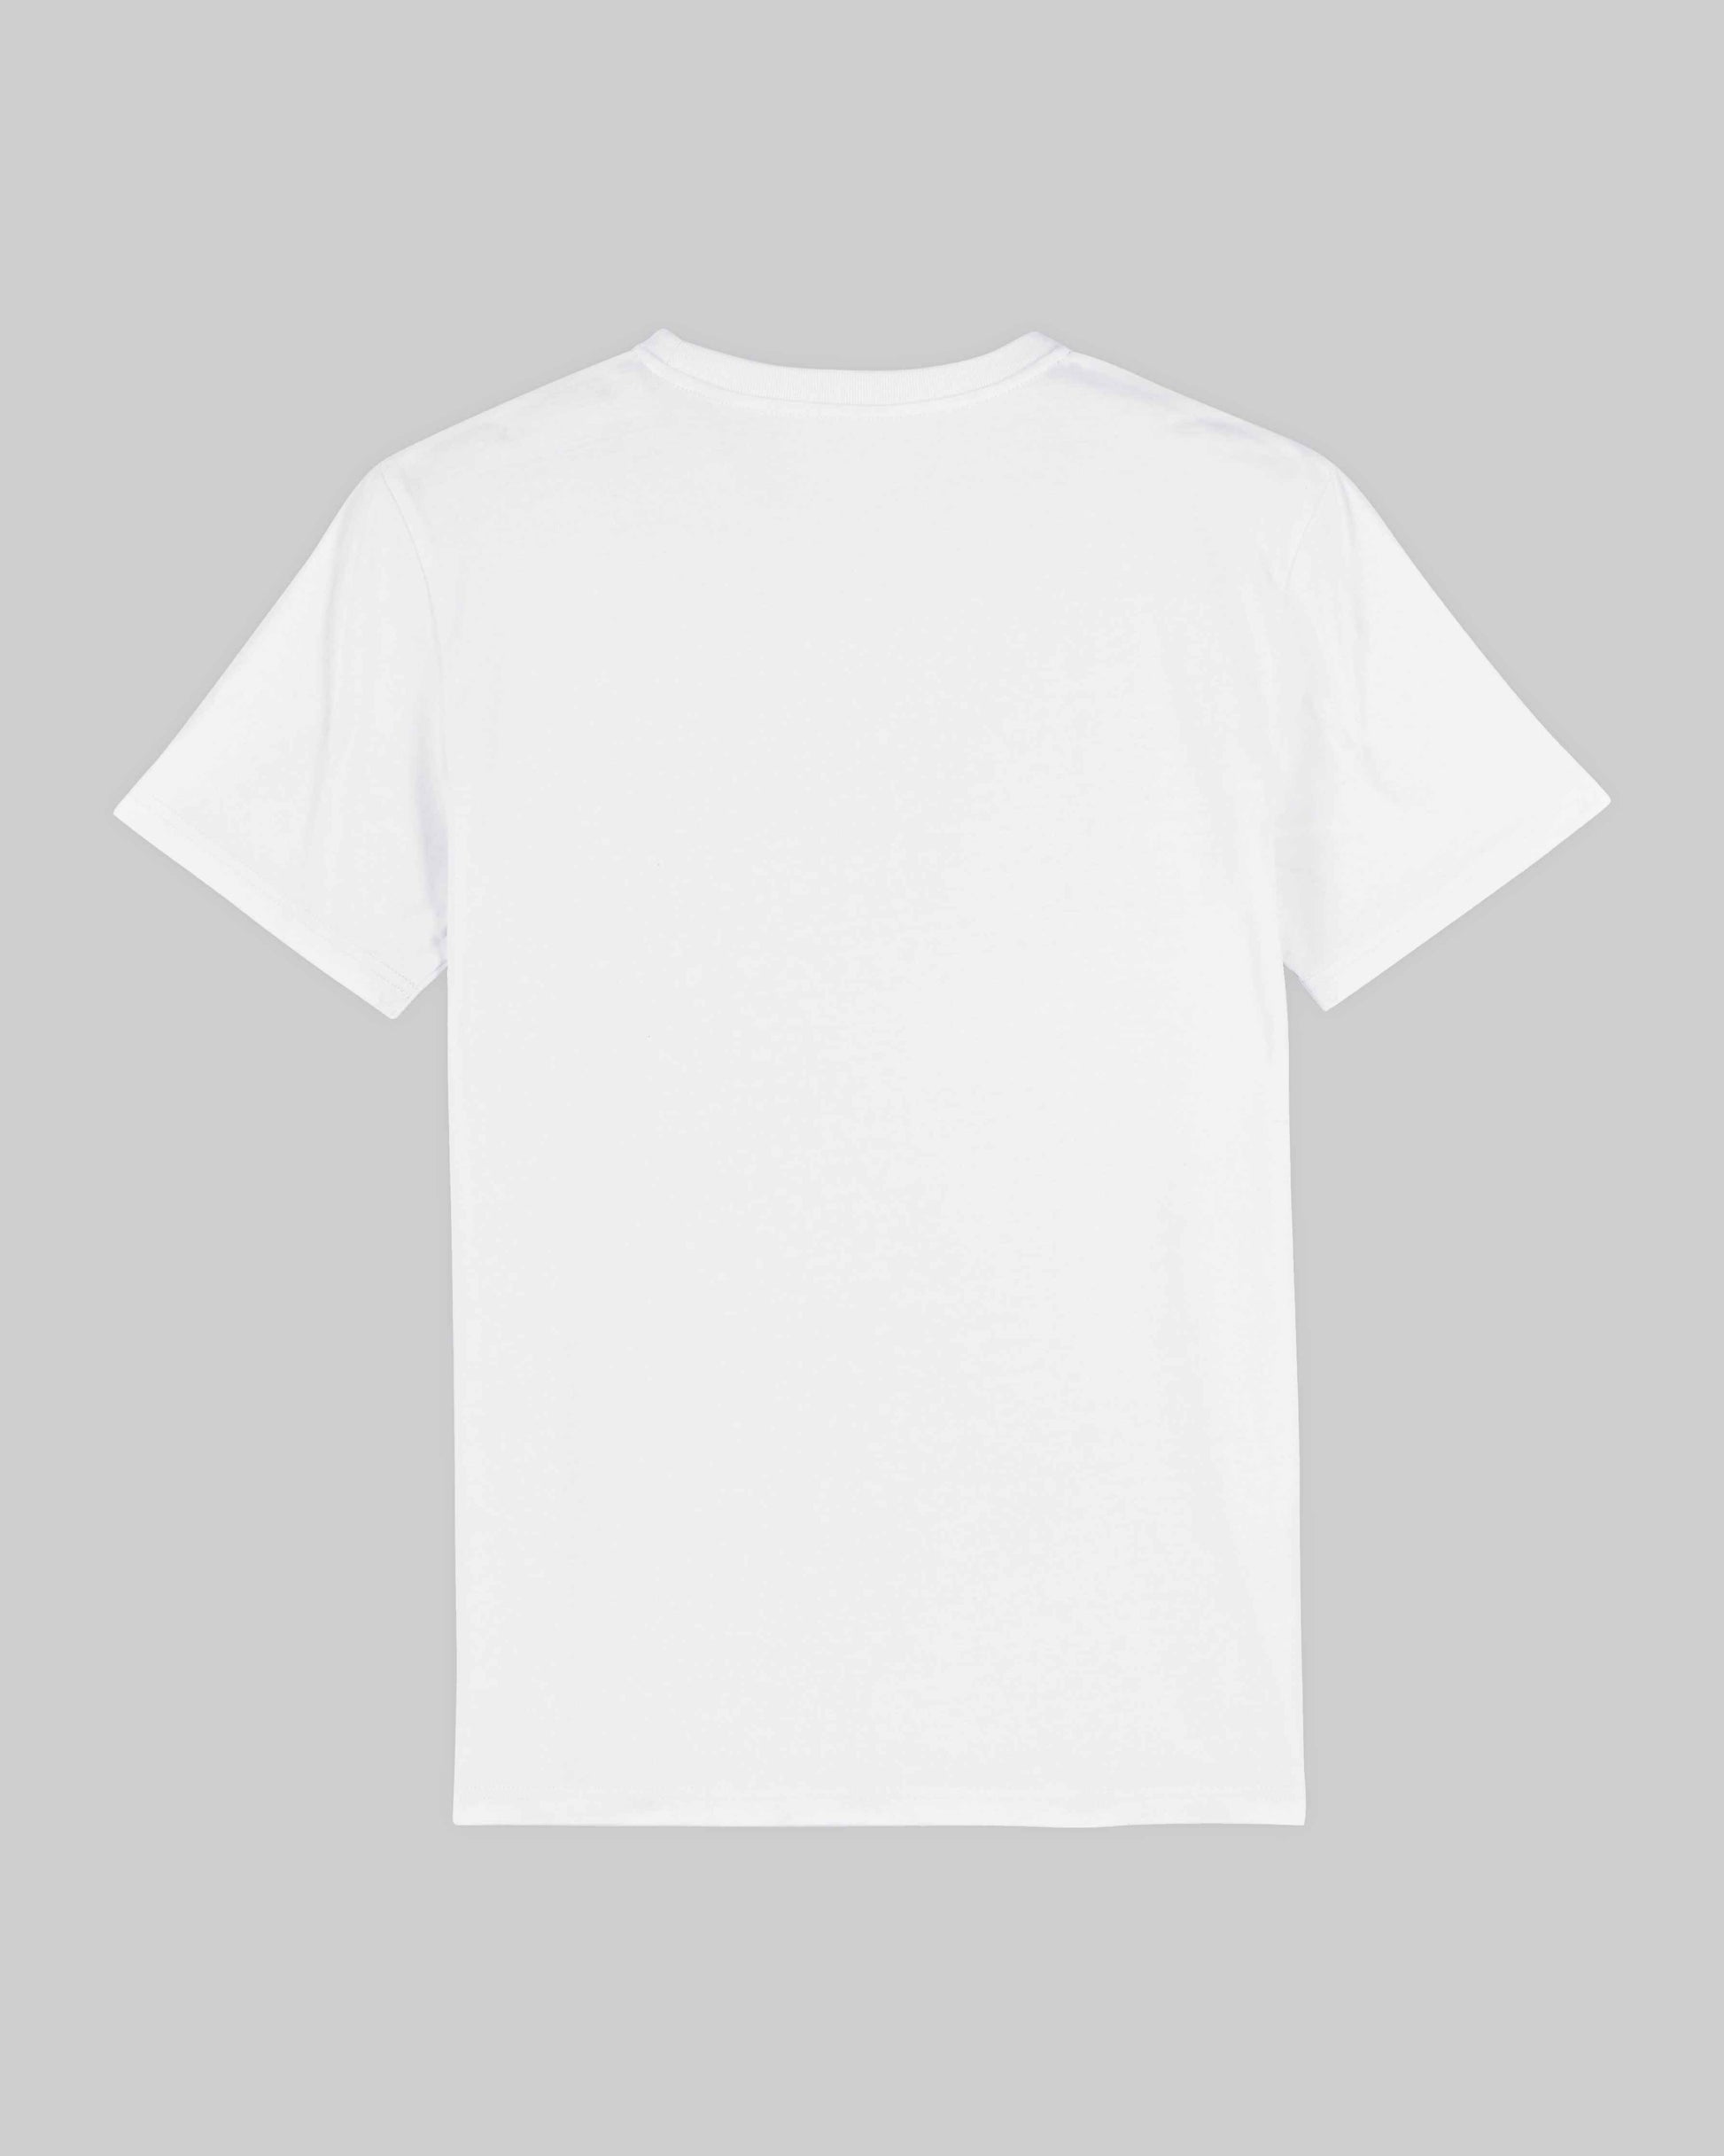 EINHORST® unisex Organic Shirt in Weiß mit dem Motiv "pride Regenbogen" in der Kombination schwarzer Regenbogen mit schwarzer Schrift, Bild von Shirt von hinten